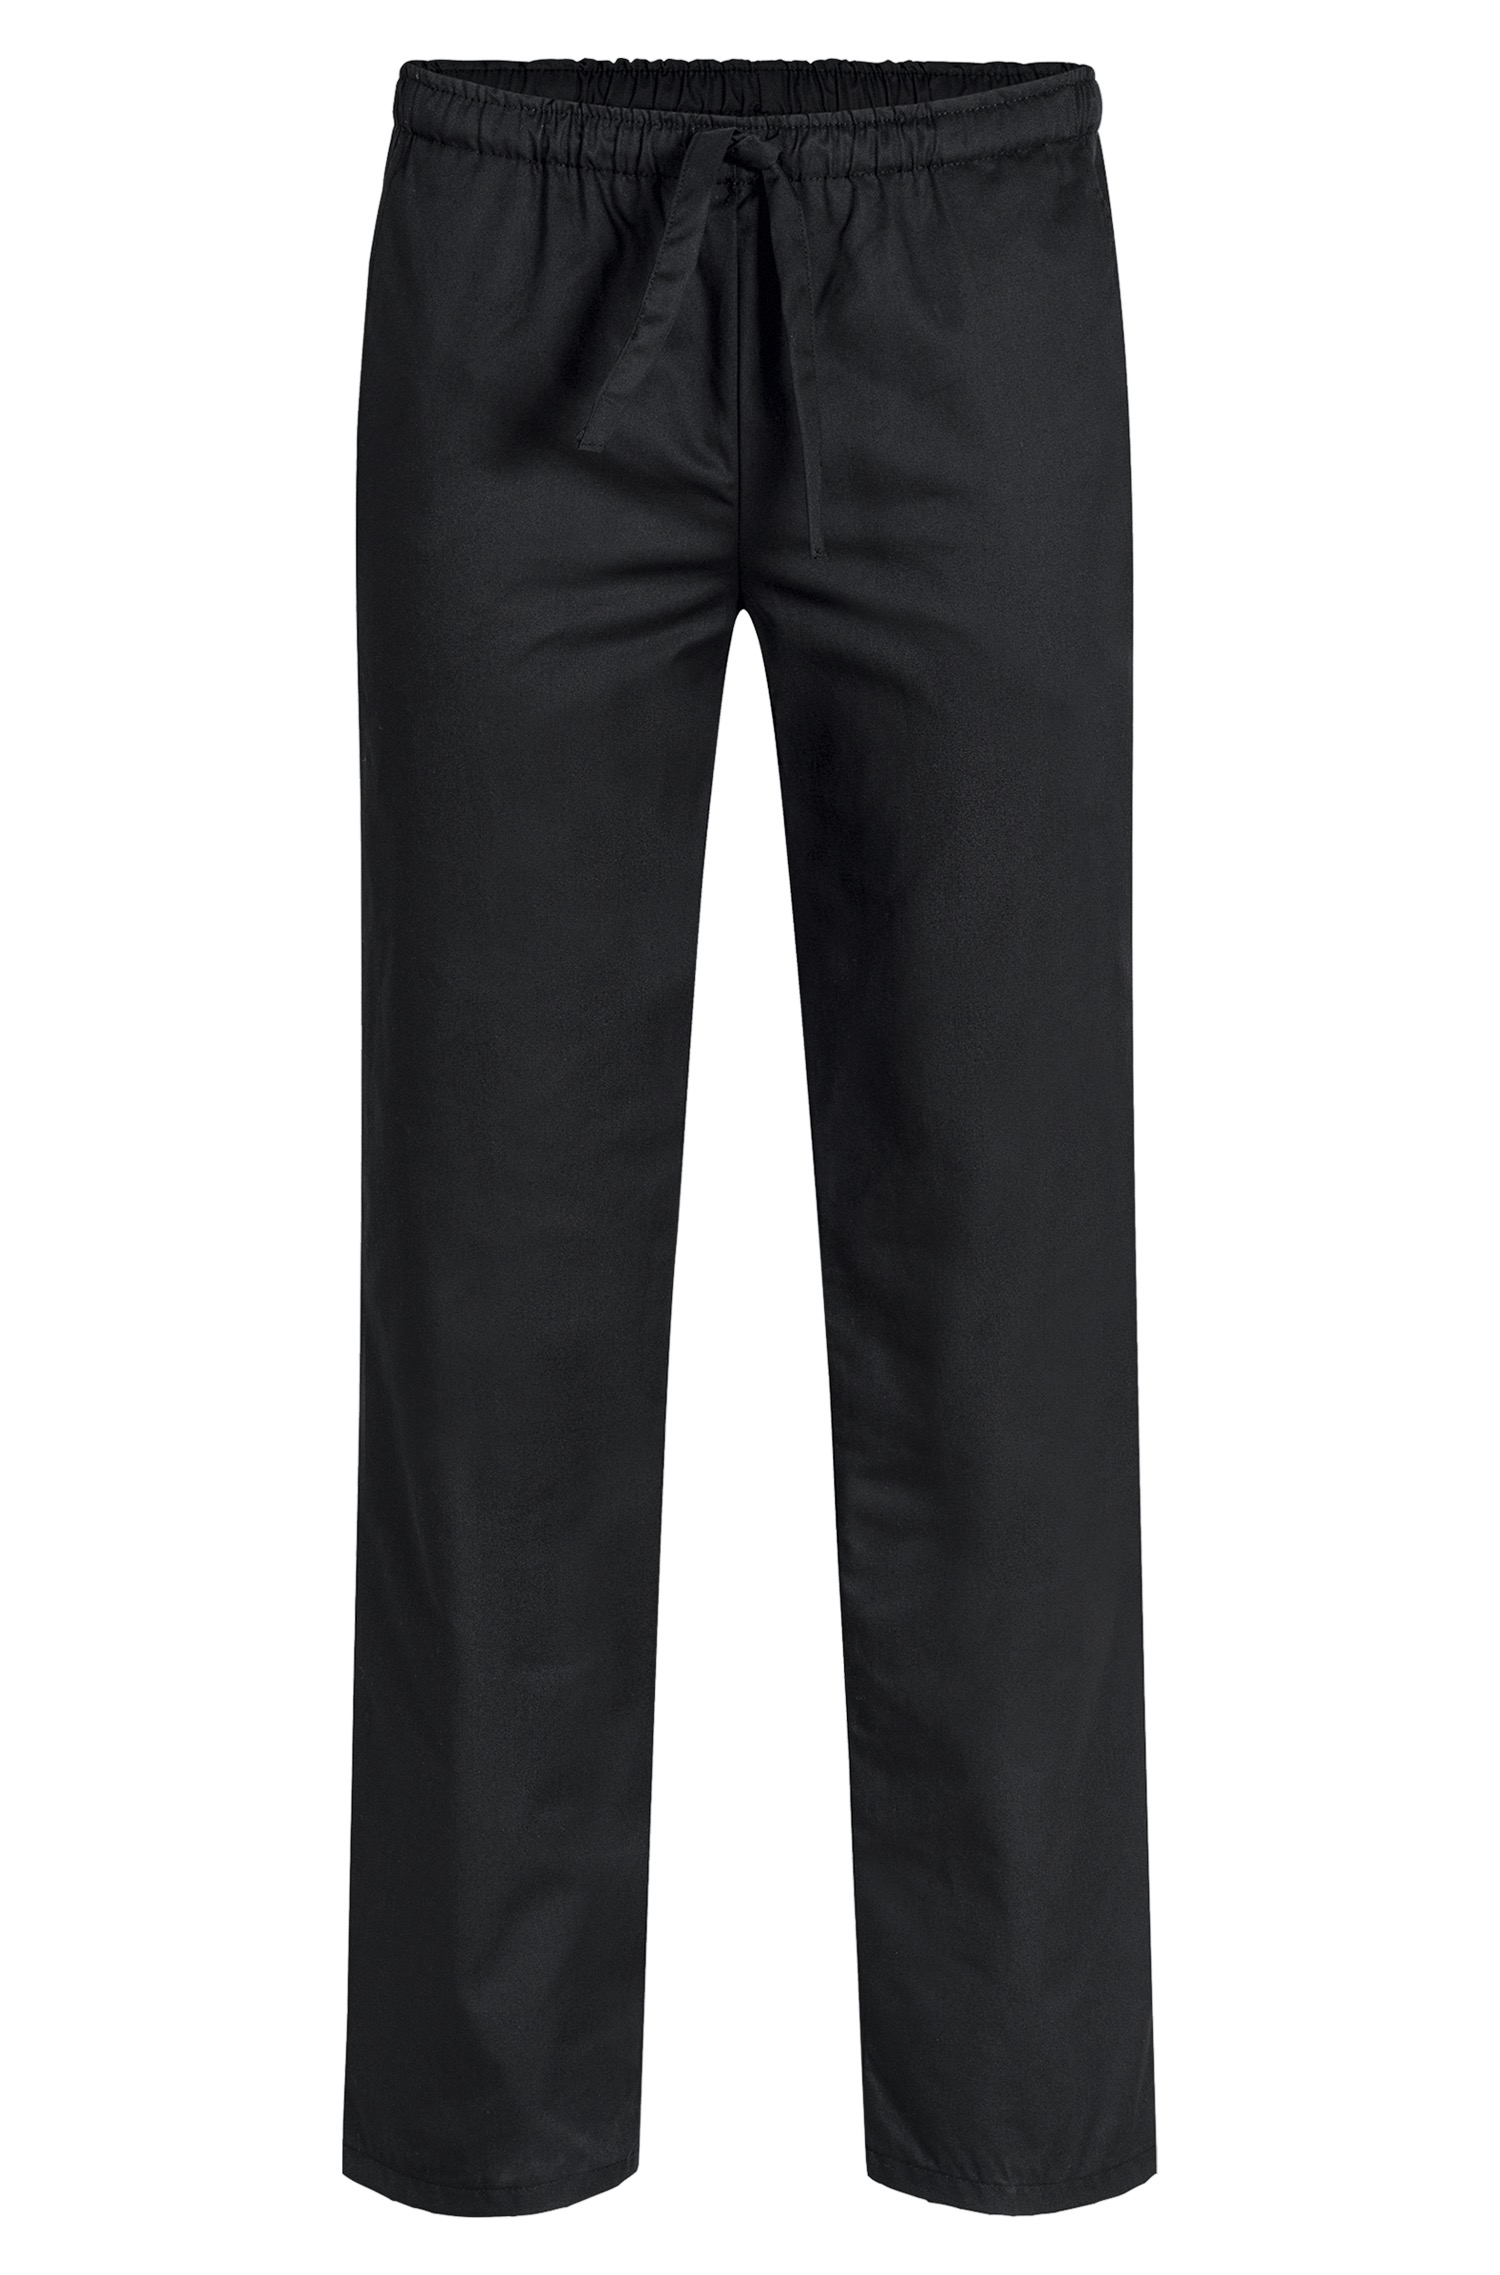 Men's slip-on pants RF 2100 Greiff® Black L